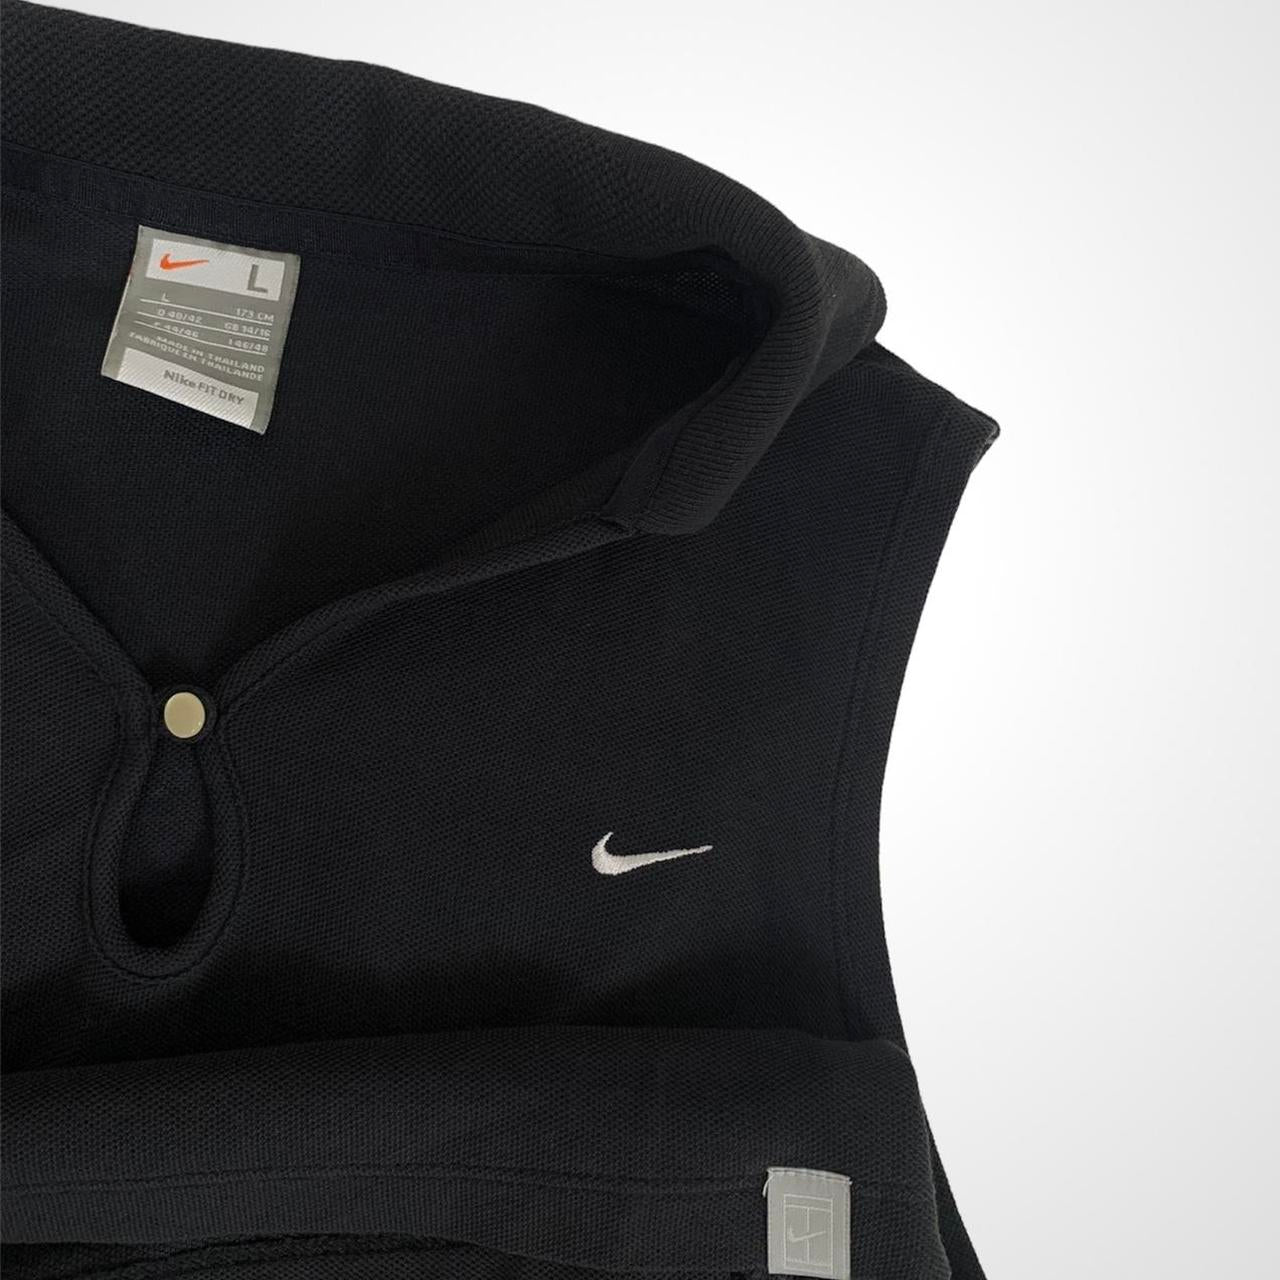 Nike vintage unisex keyhole sleeveless collared polo shirt